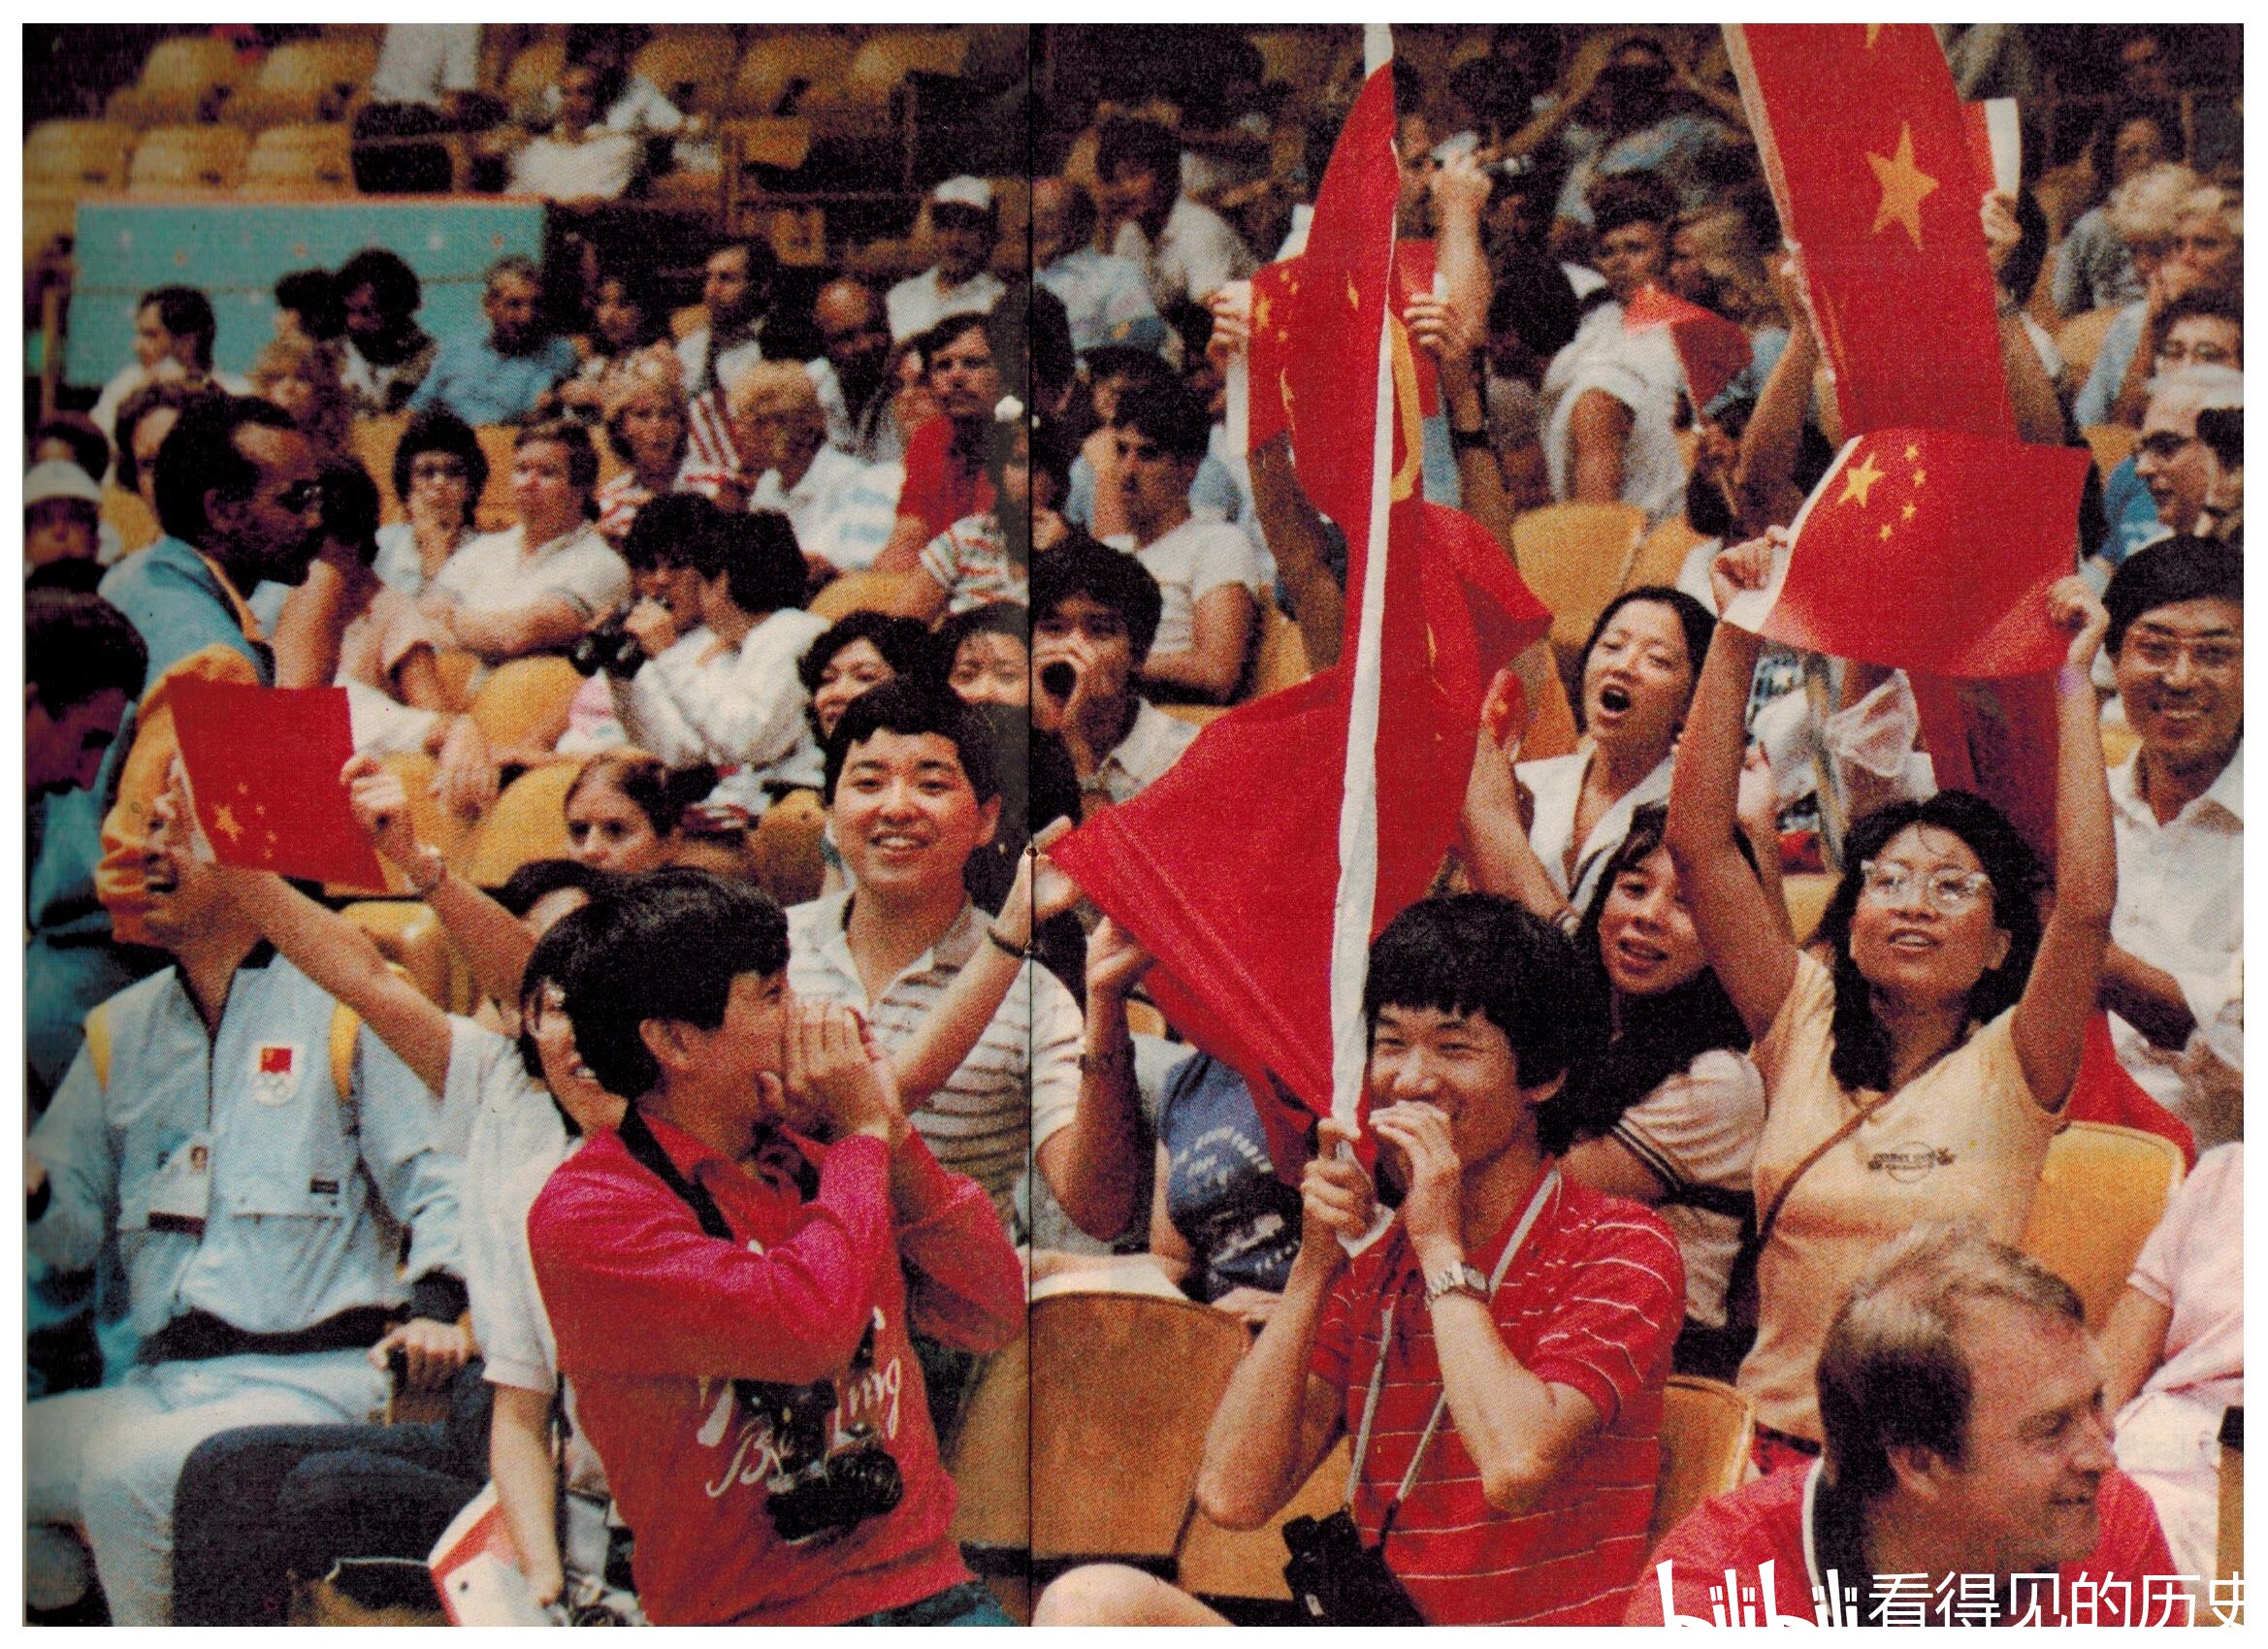 1984年洛杉矶奥运会 中国队第一次参赛 就夺得15枚金牌